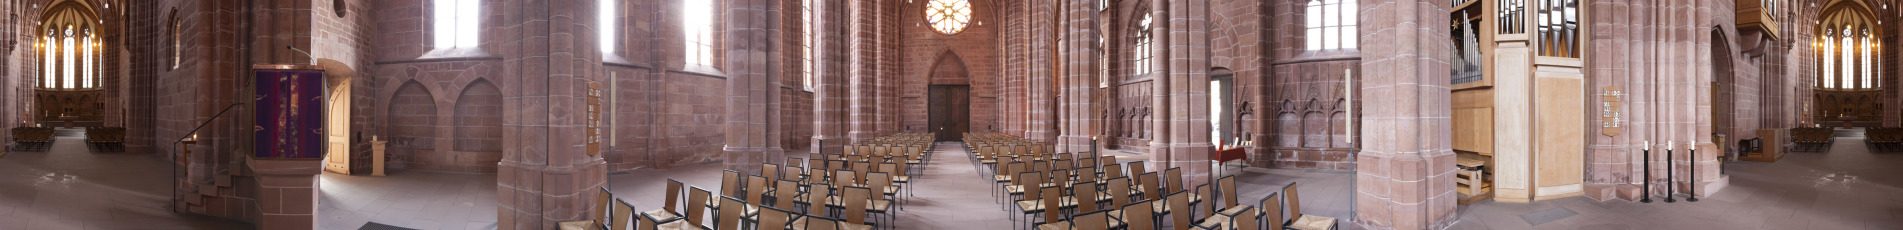 Ein Panorama mit der Innenansicht der Stiftskirche.